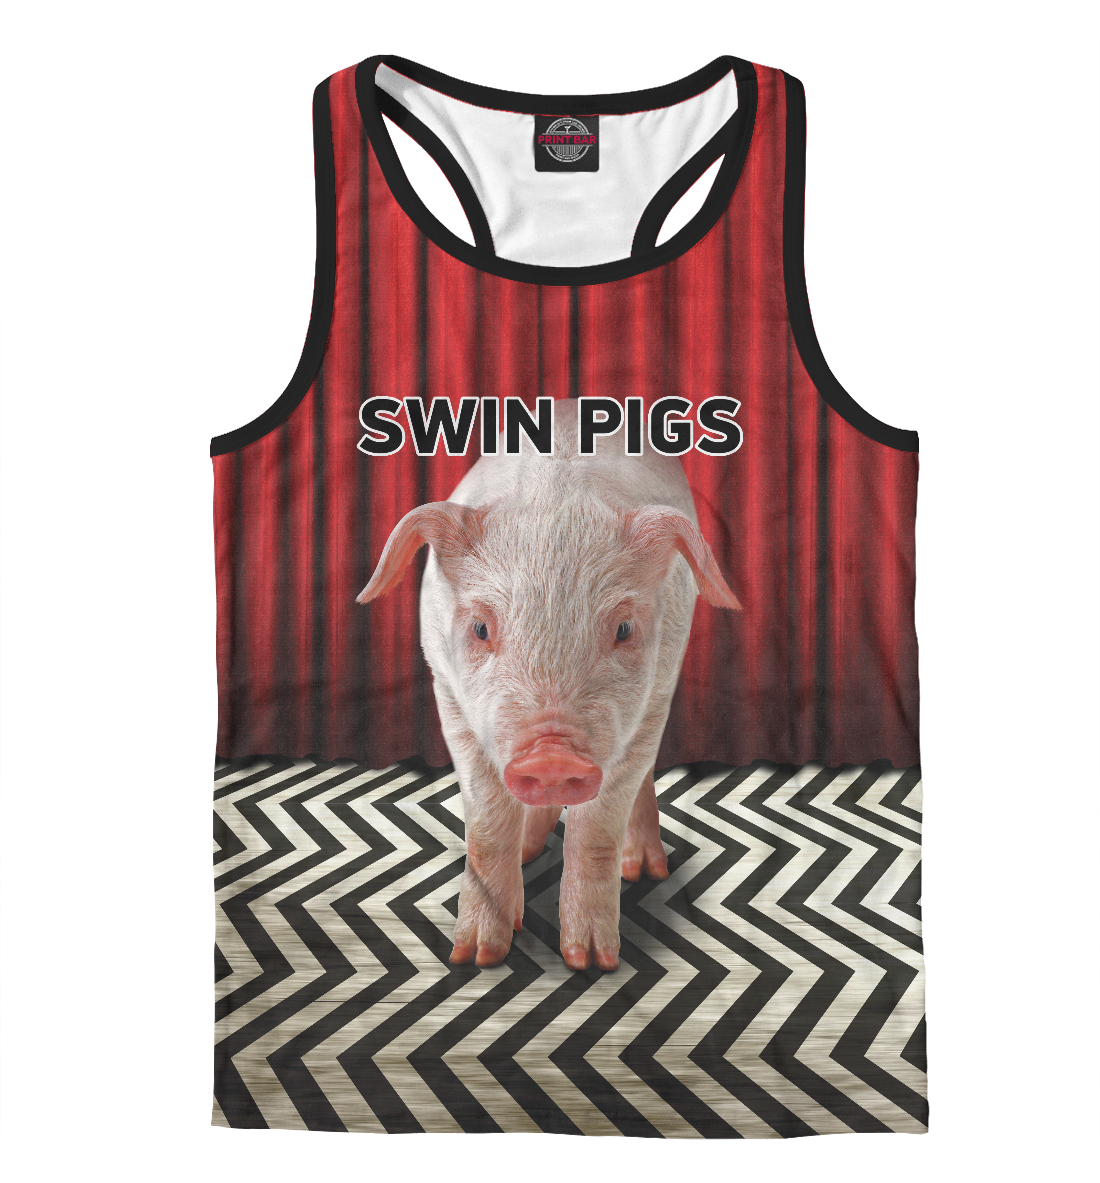 Swin Pigs war pigs